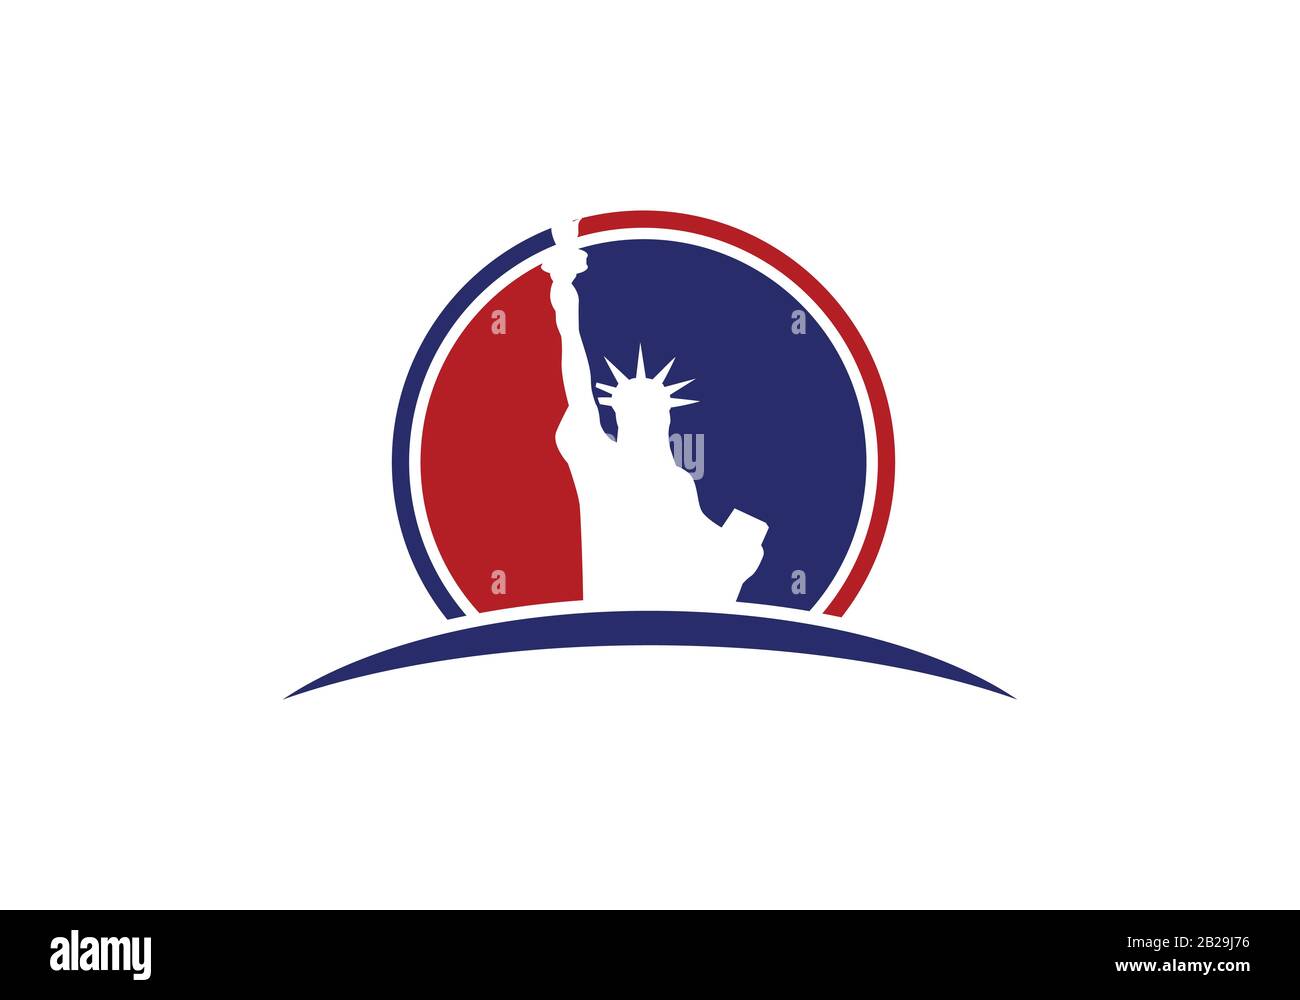 Gedenktag. Freiheitsstatue auf weißem Hintergrund. Emblem, Logo. Vektor. Stock Vektor